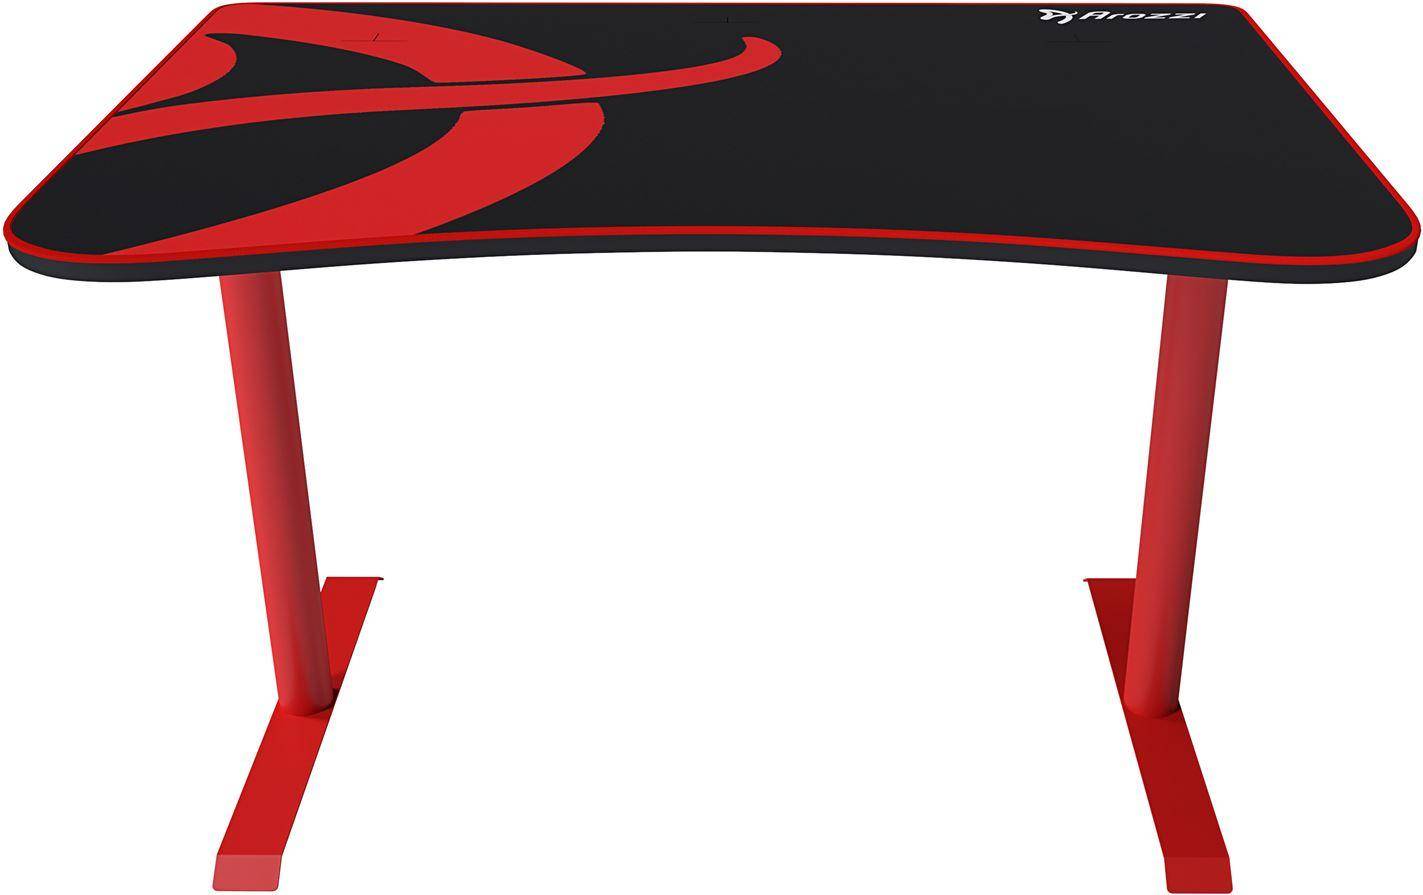  Bild på Arozzi Arena Fratello Gaming Desk - Red/Black gamingbord